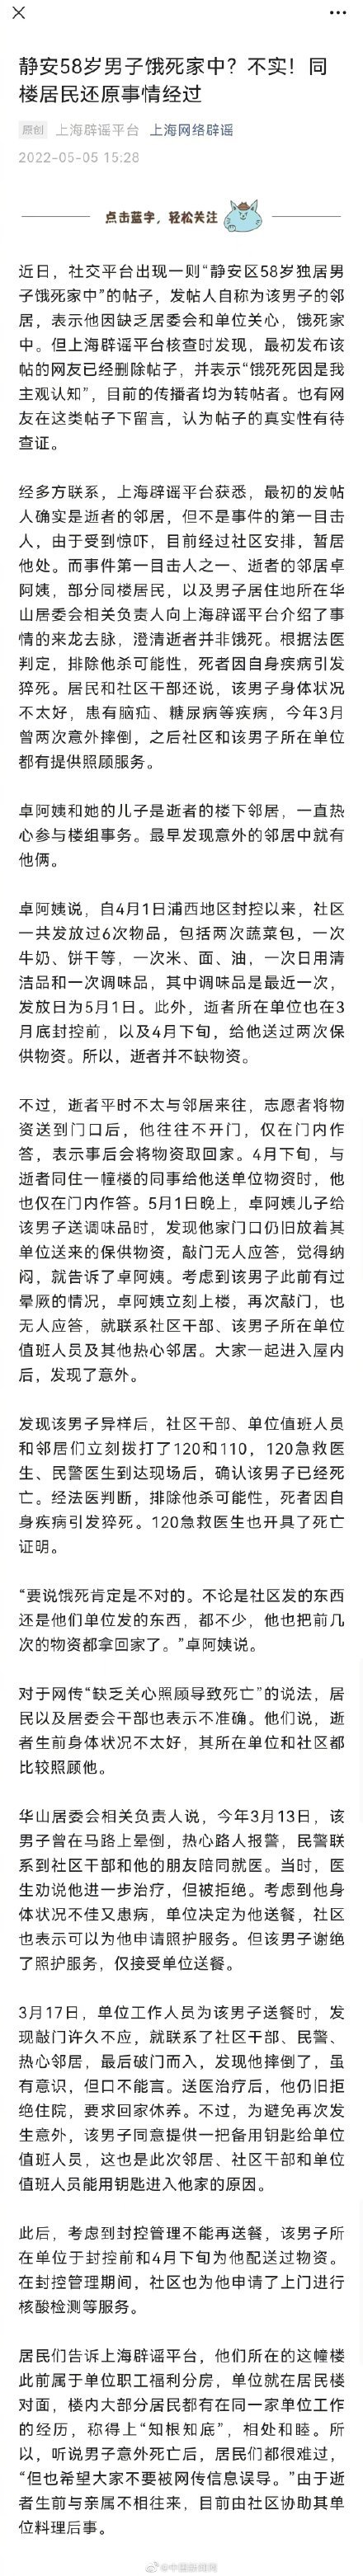 上海58岁独居男子饿死家中?不实！因自身疾病引发猝死